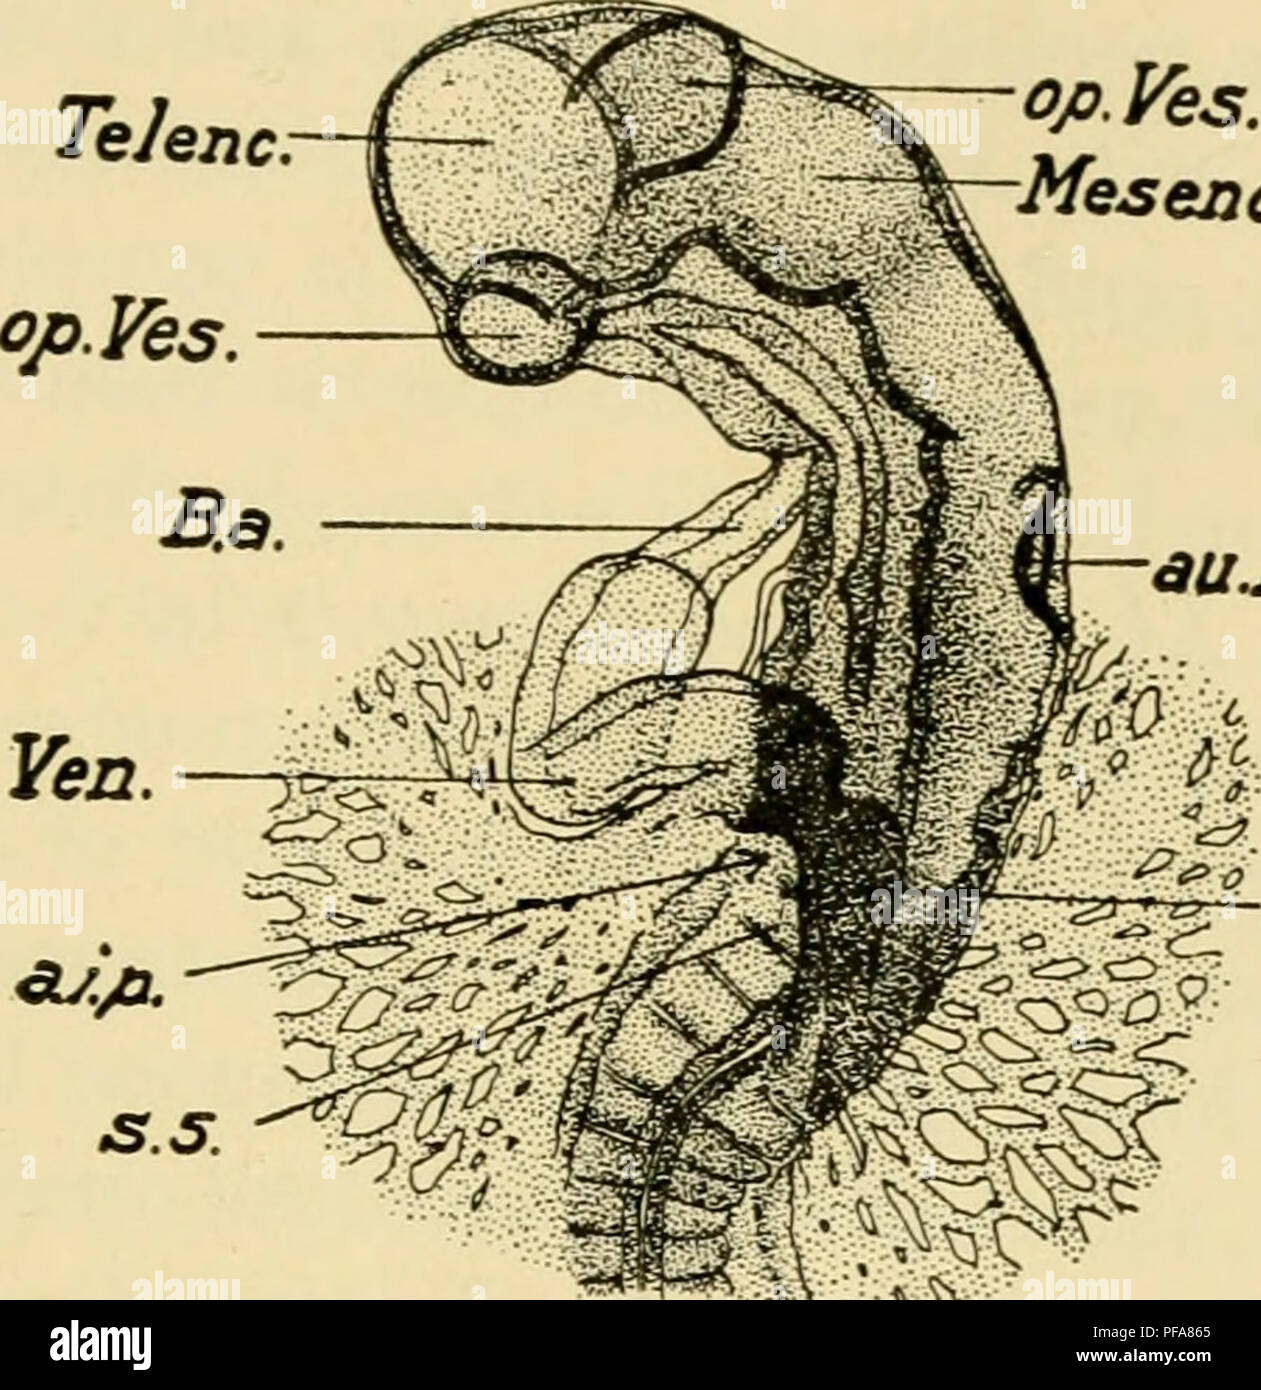 . El desarrollo del Pollito : una introducción a la embriología. Embriología; Pollos -- Los embriones. De 12 a 36 SOMITES 137 (una diagramación esquema está dada primero y una descripción detallada a continuación). La somatopleure se eleva en forma de un pliegue que rodea el embrión; este pliegue comienza primero en la parte delantera de la cabeza del embrión como jefe-pliegue del amnios, que 0/3. Sí. Mesenc auJ*. Vojn Fig. 74. - Cabeza del mismo embrión desde el lado ventral. Abreviaturas como antes.. Por favor tenga en cuenta que estas imágenes son extraídas de la página escaneada imágenes que pueden haber sido mejorado digitalmente Foto de stock